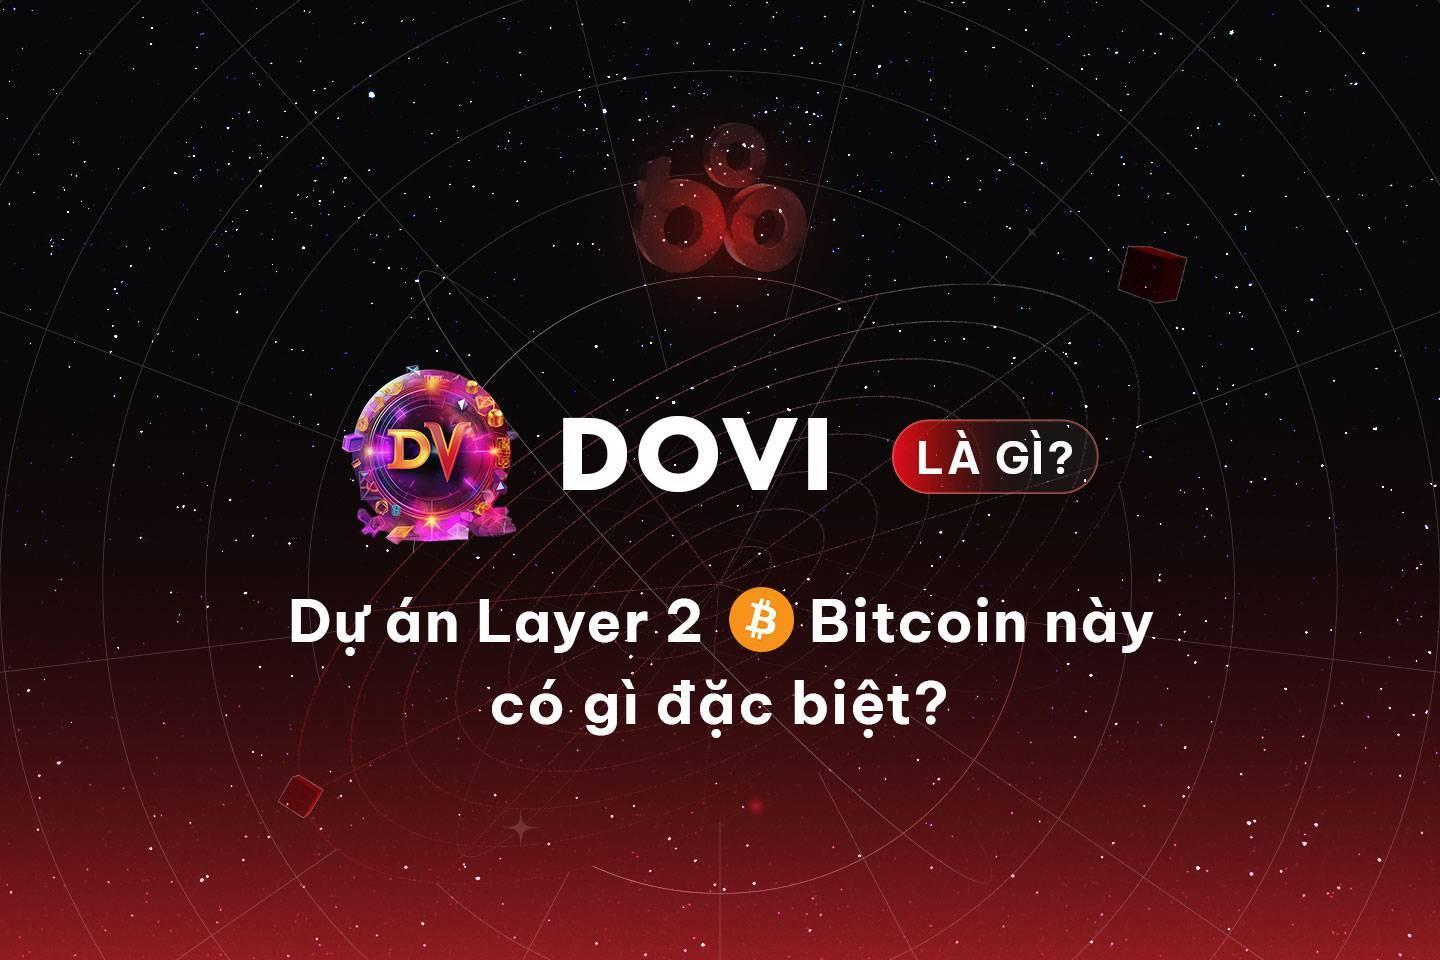 dovi-la-gi-du-an-layer-2-bitcoin-nay-co-gi-dac-biet